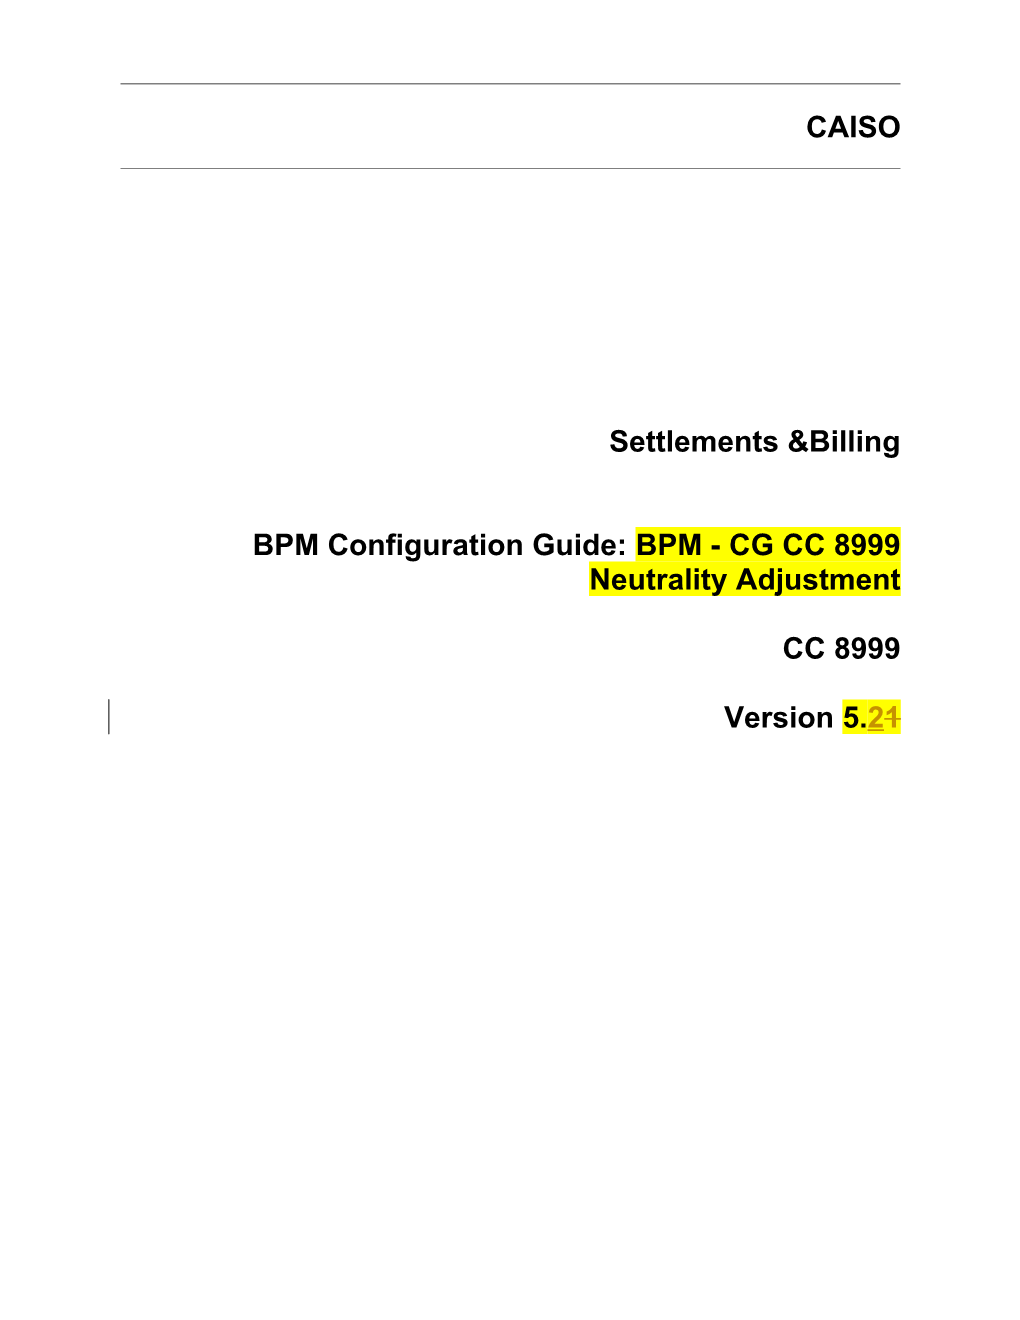 BPM - CG CC 8999 Neutrality Adjustment